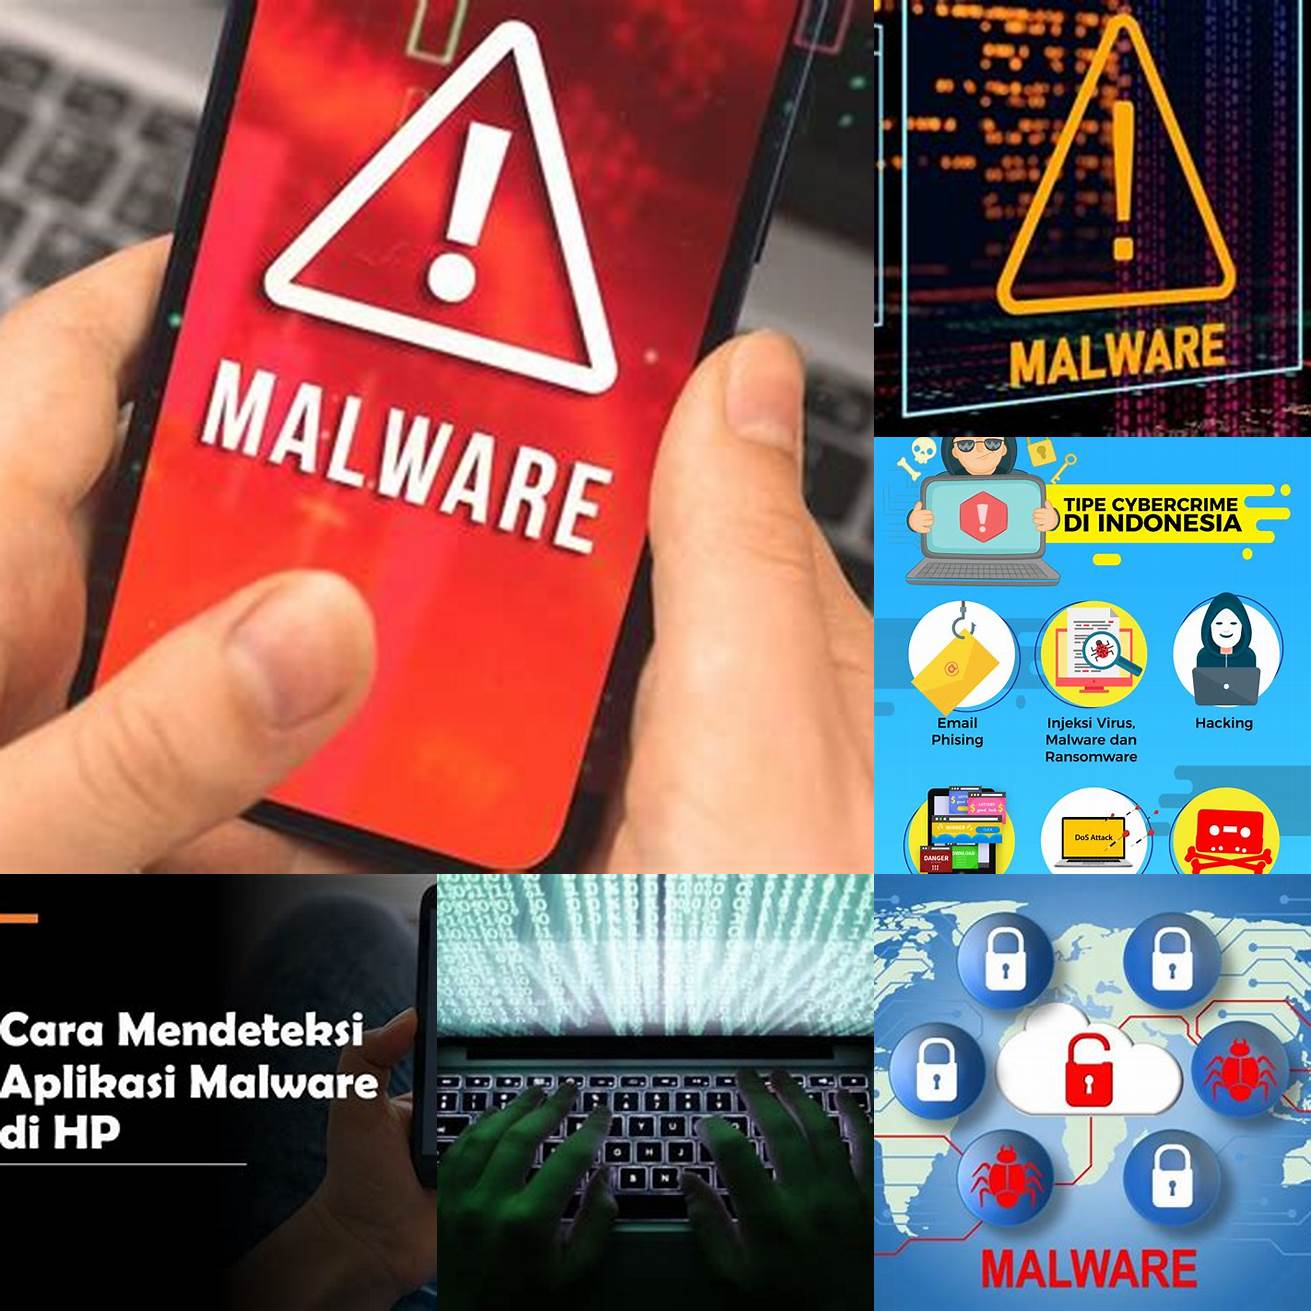 Berisiko terhadap malware